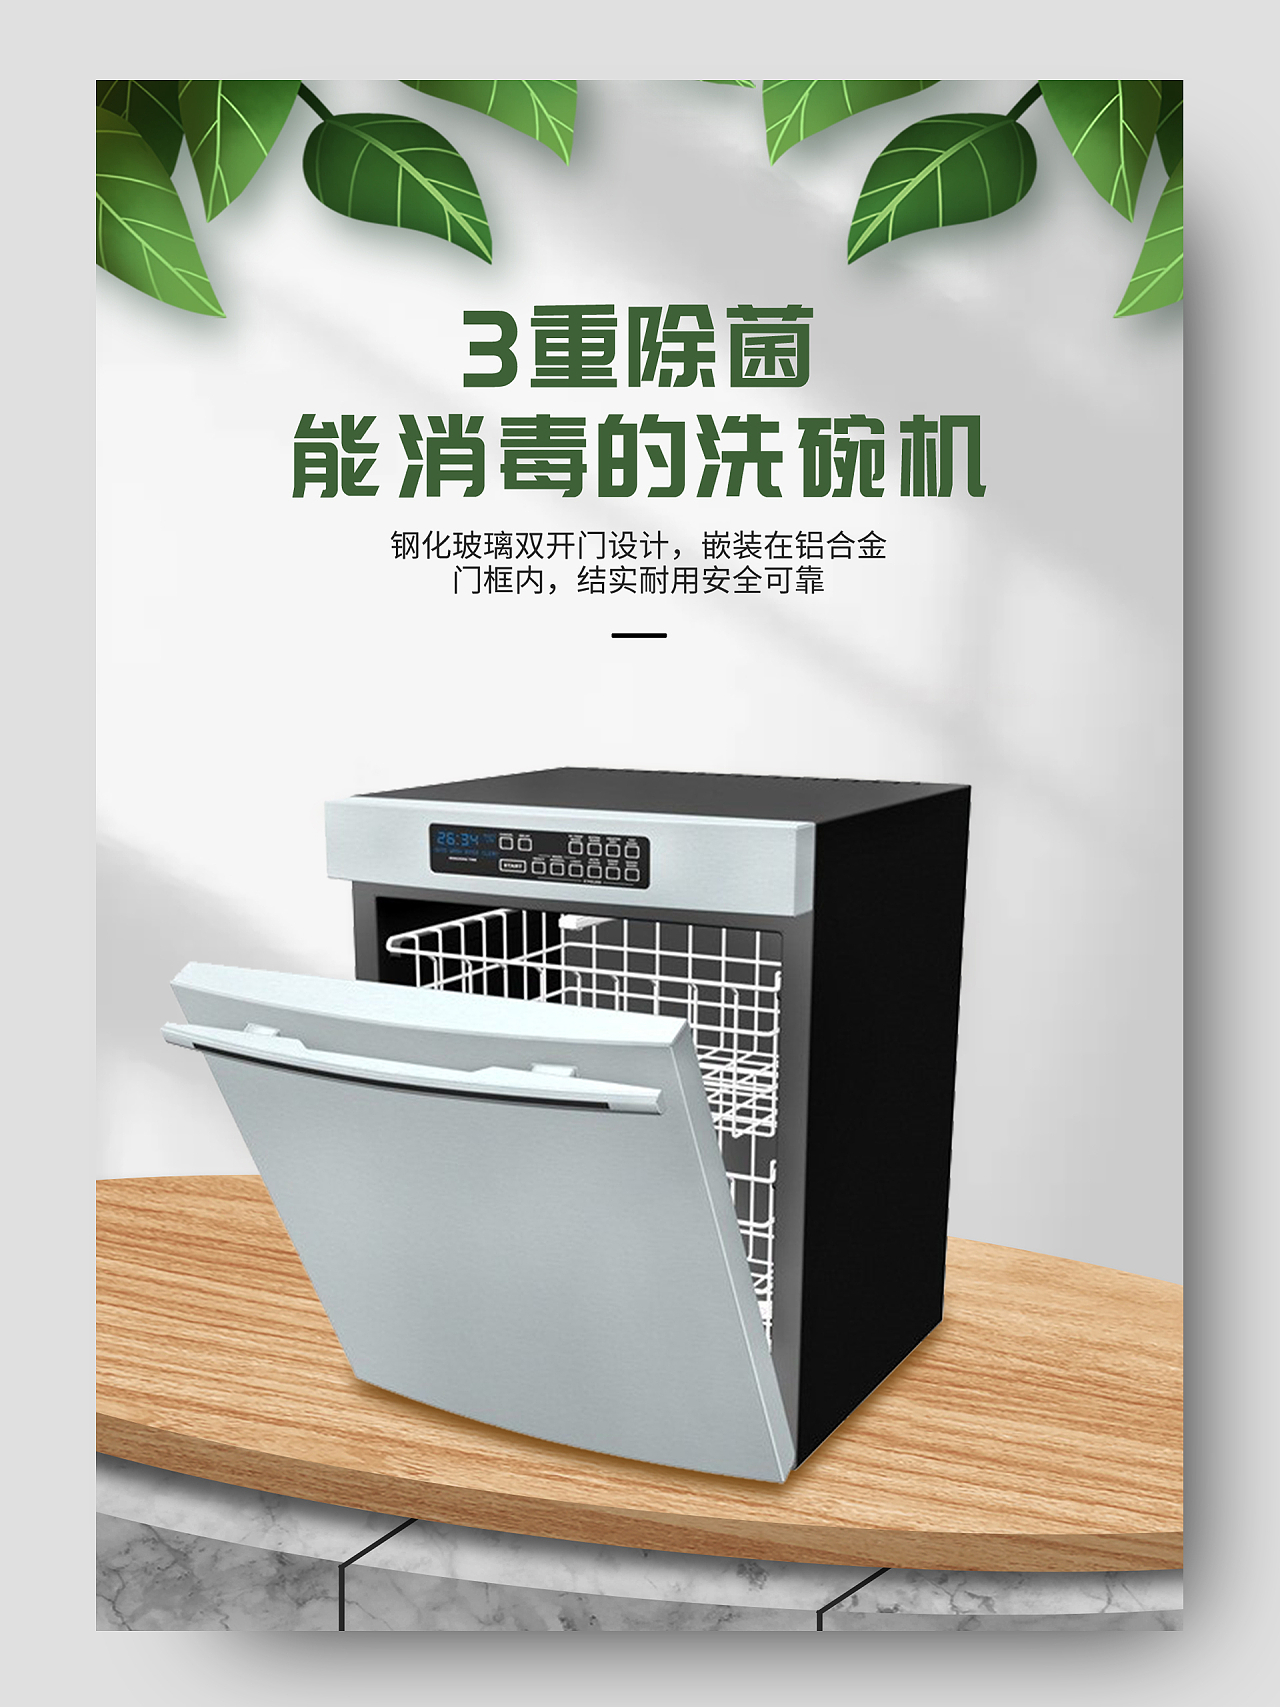 灰色简约时尚全自动洗碗机厨房电器家电促销电商详情页